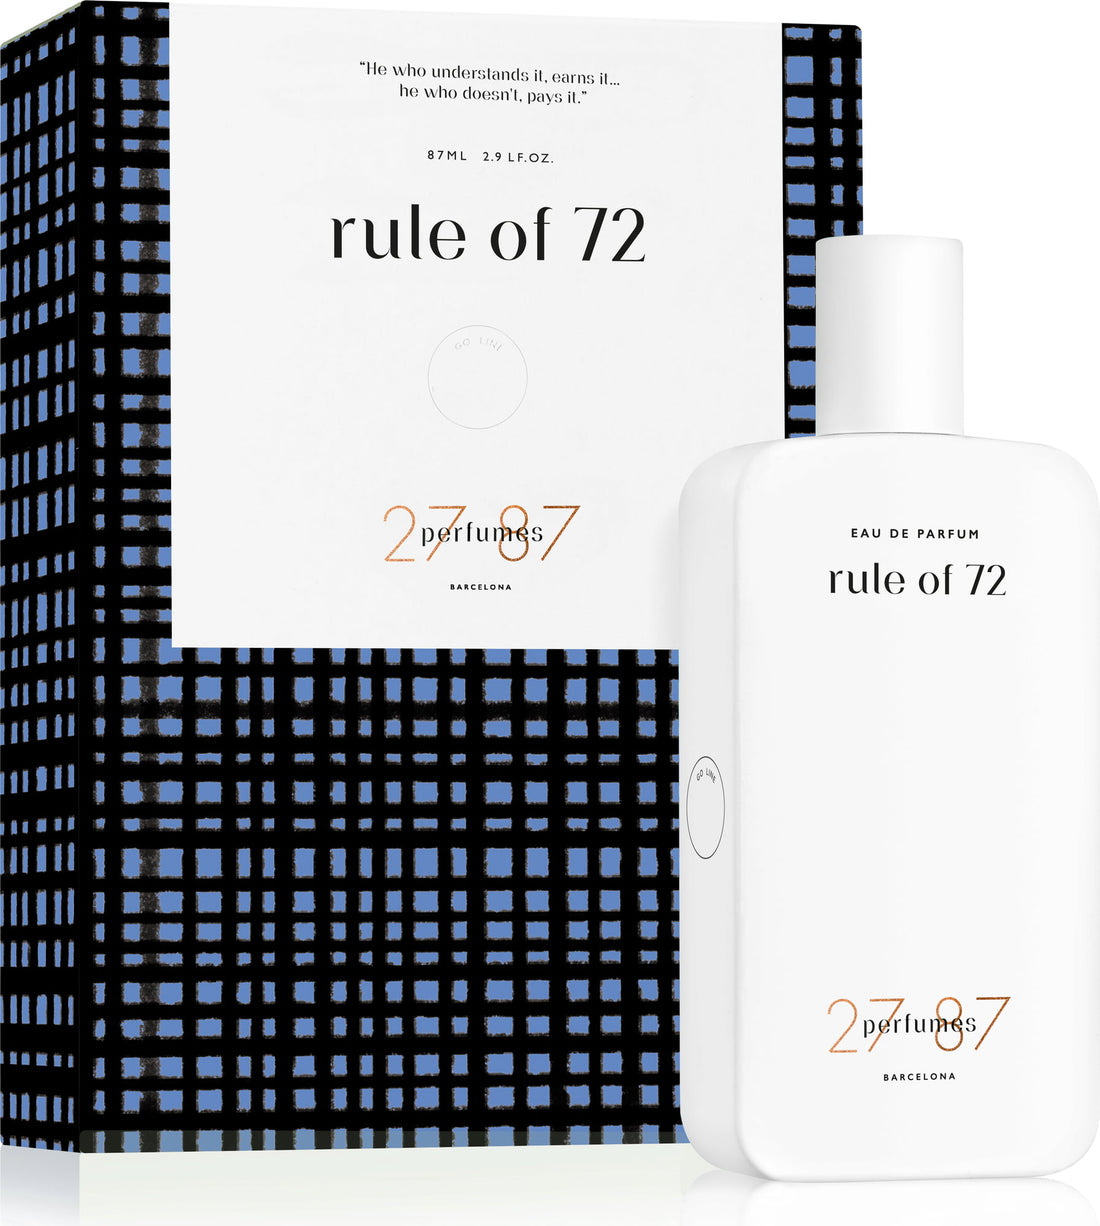 27 87 Rule of 72 Eau de Parfum - 87 ml